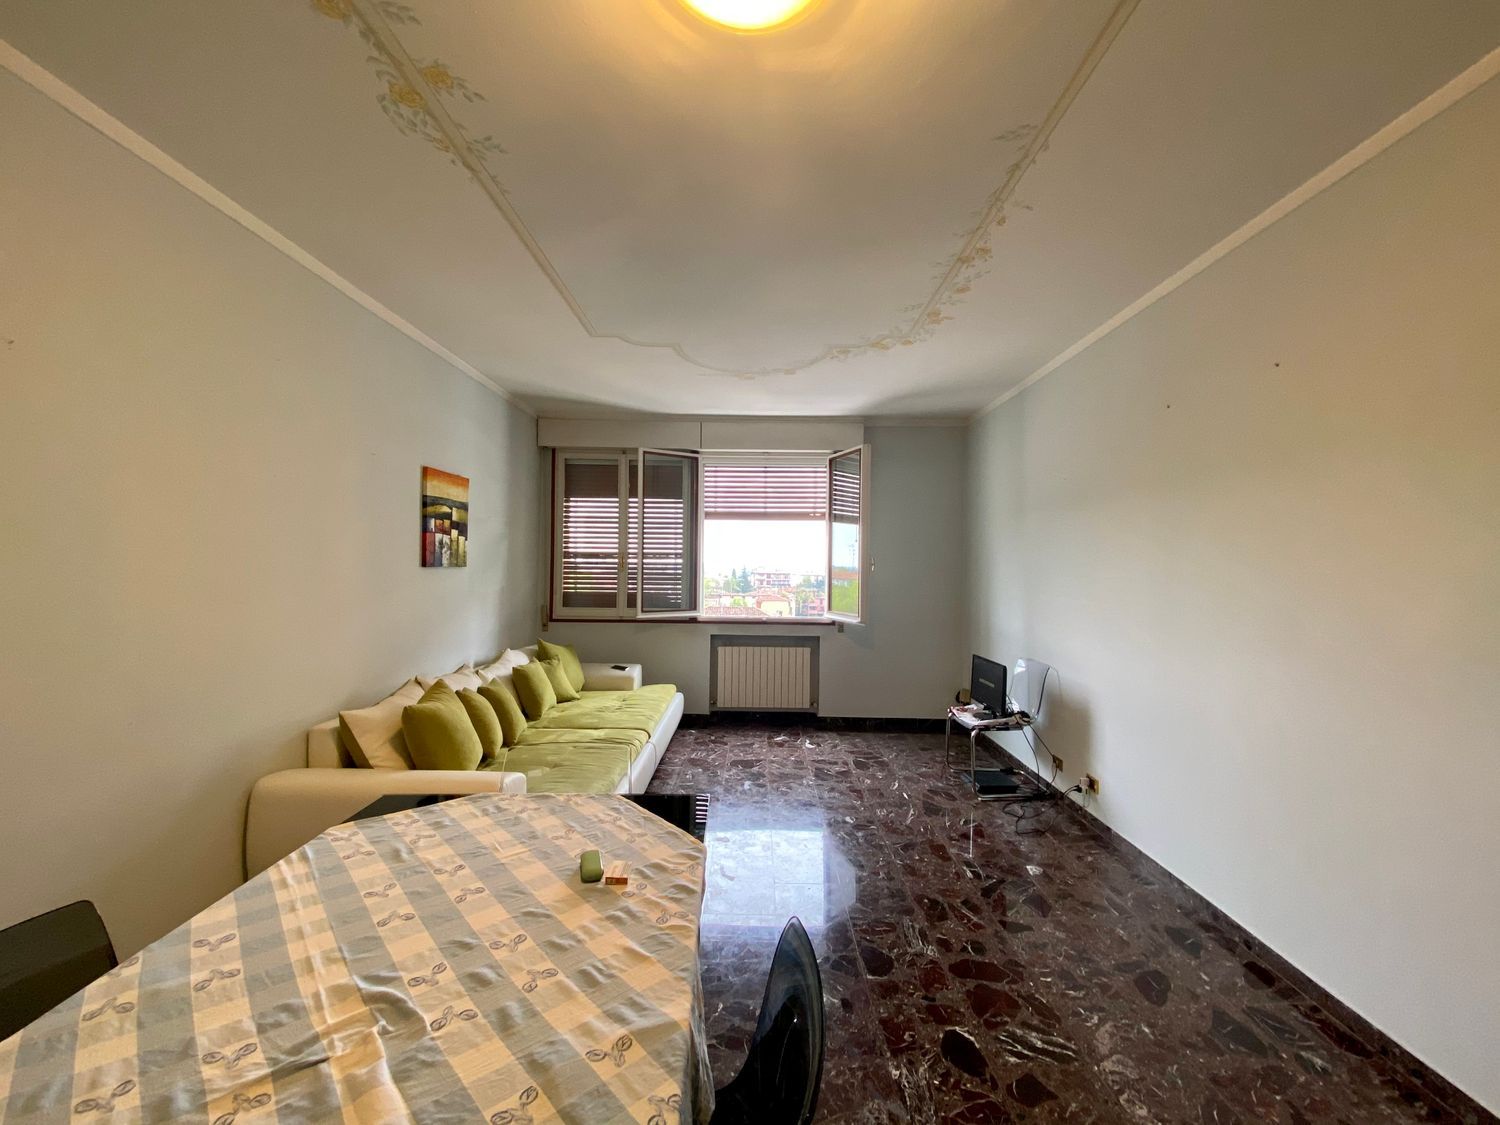 Appartamento in vendita a Carpi, 3 locali, prezzo € 140.000 | CambioCasa.it